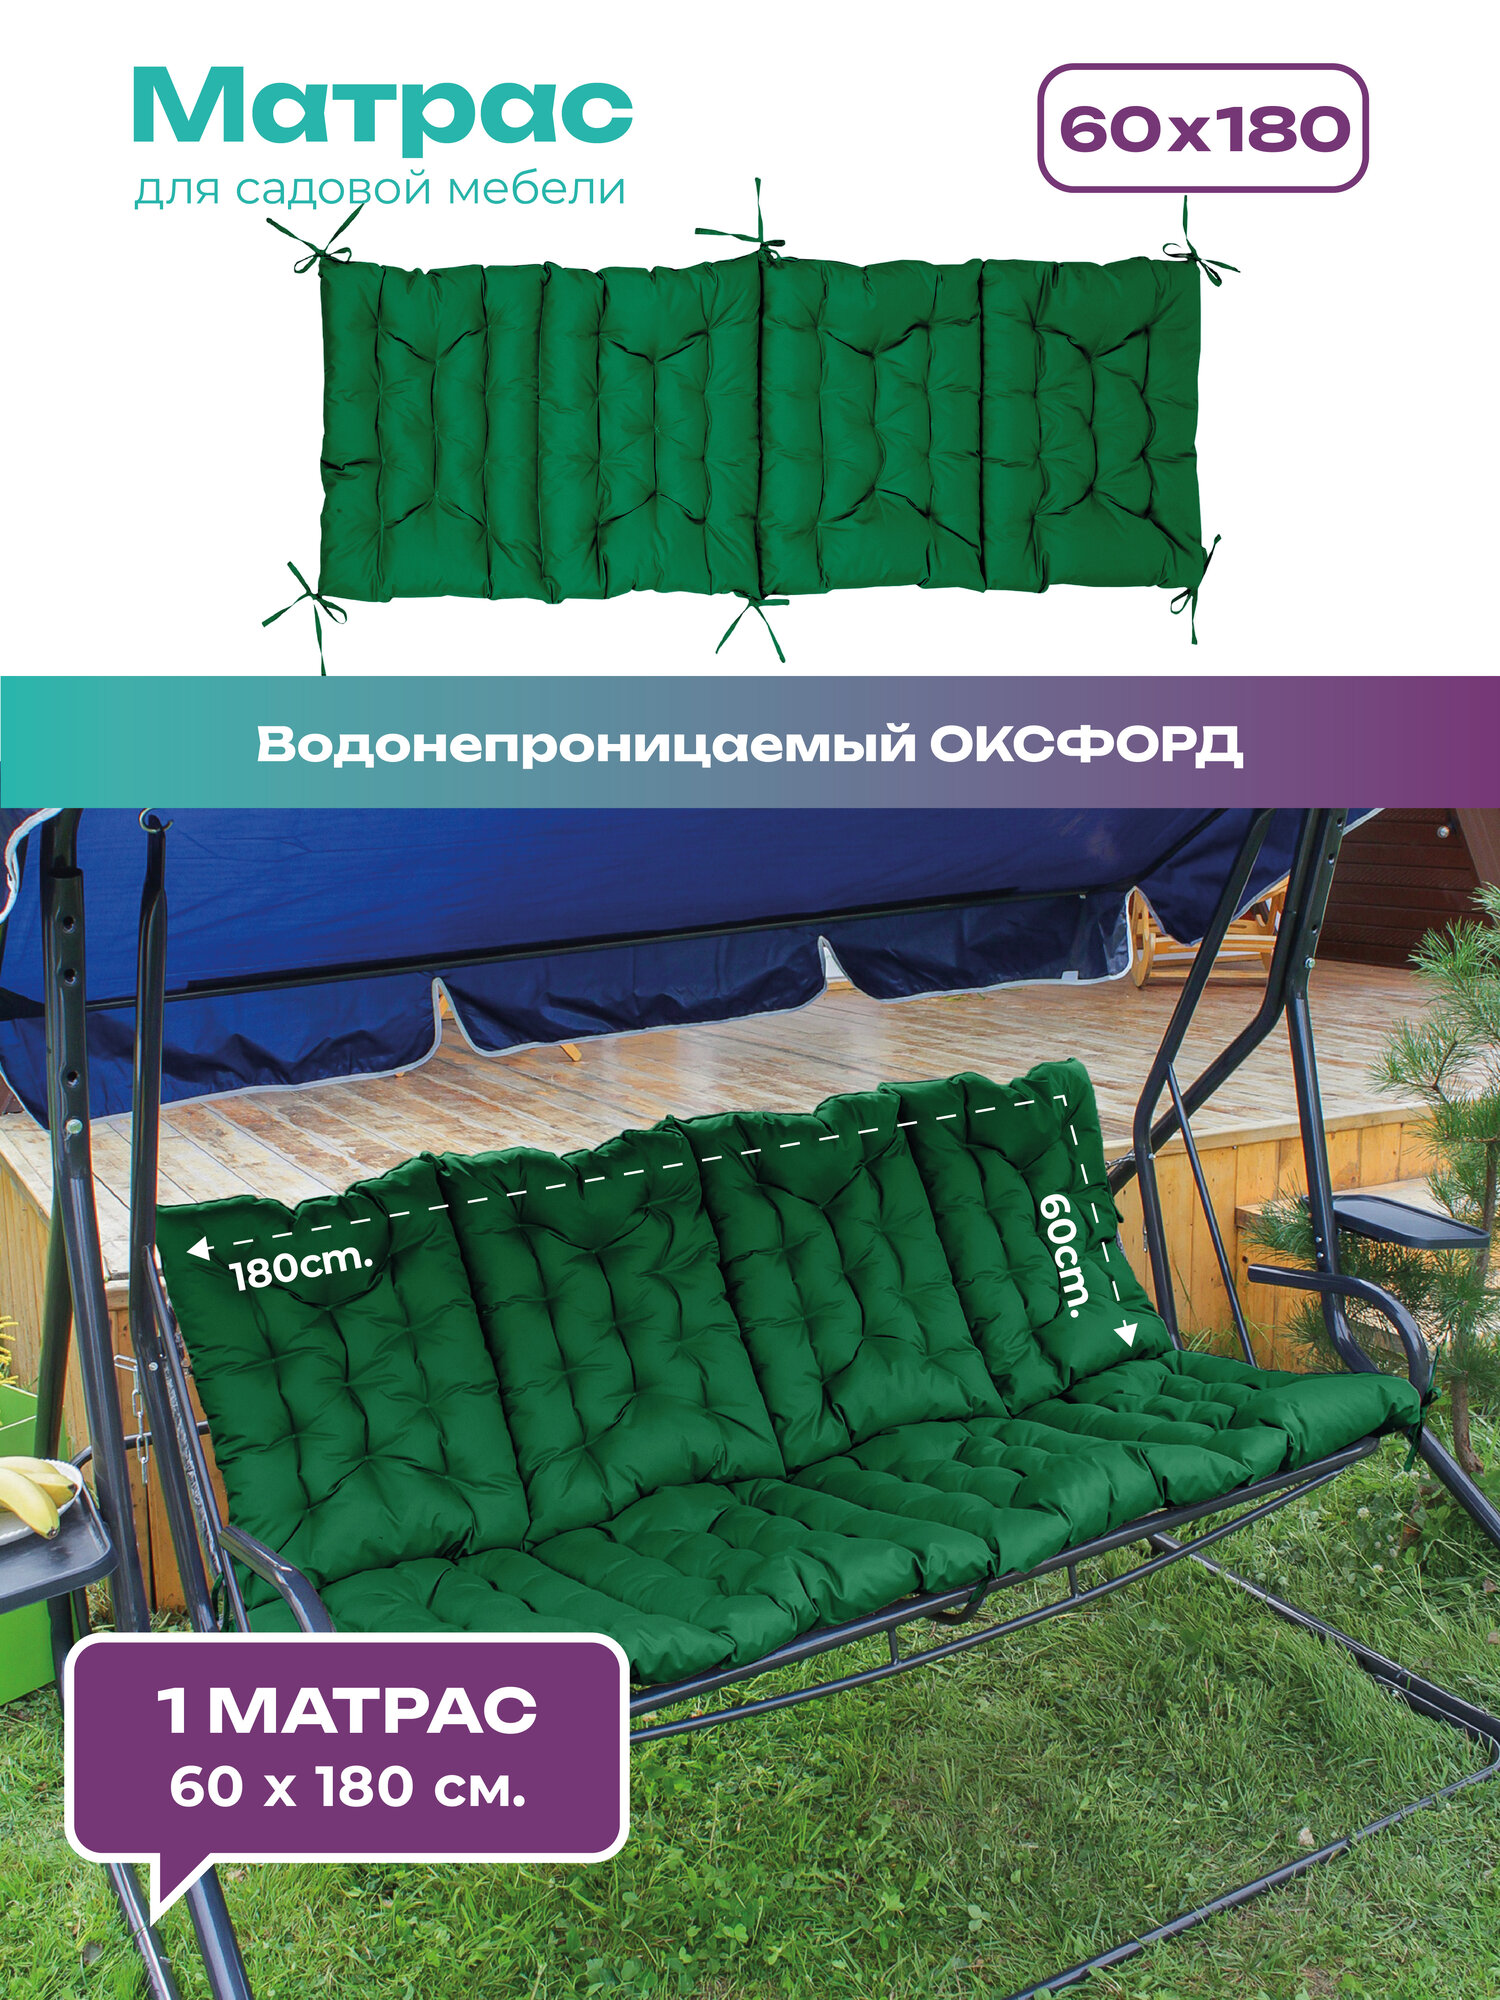 Матрас для качелей Bio-Line, подушка матрас на скамейку, шезлонг, кушетку, 60х180 см, влагостойкий зеленый